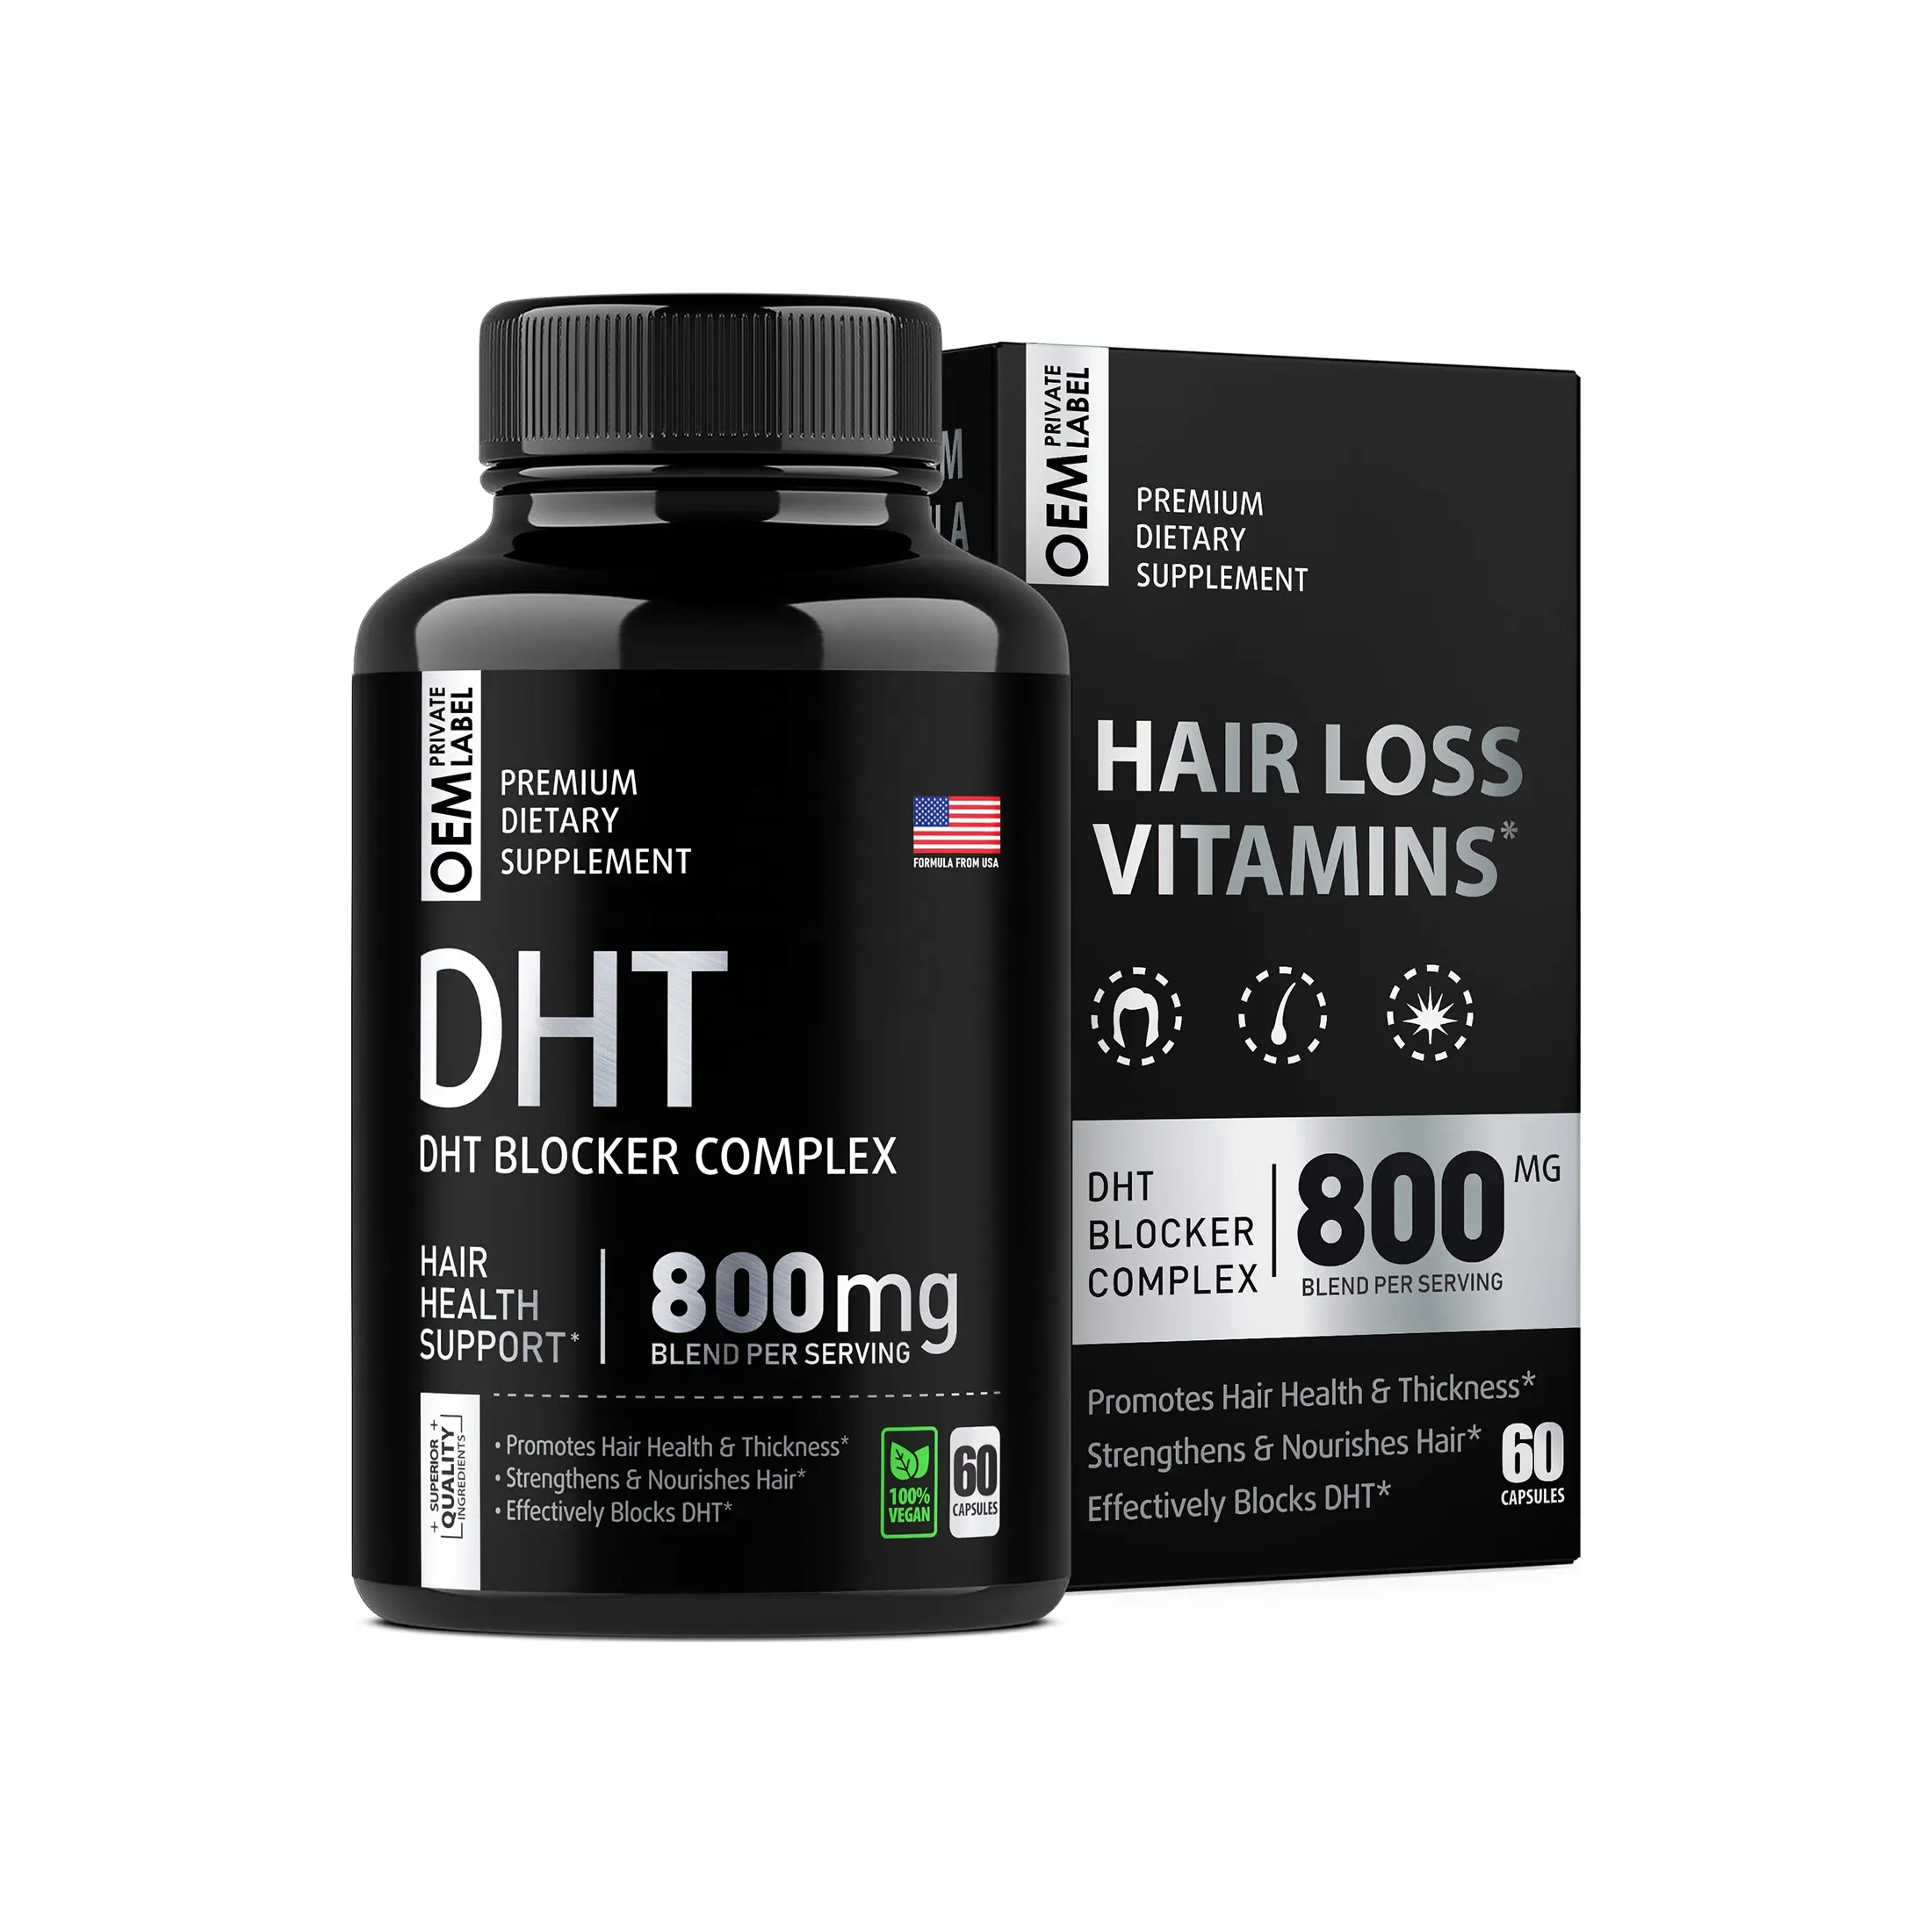 Cápsula de pérdida de cabello bloqueadora DHT de etiqueta privada OEM con biotina que promueve el crecimiento del cabello fortalece el cabello saludable y la prevención de la pérdida de calvicie